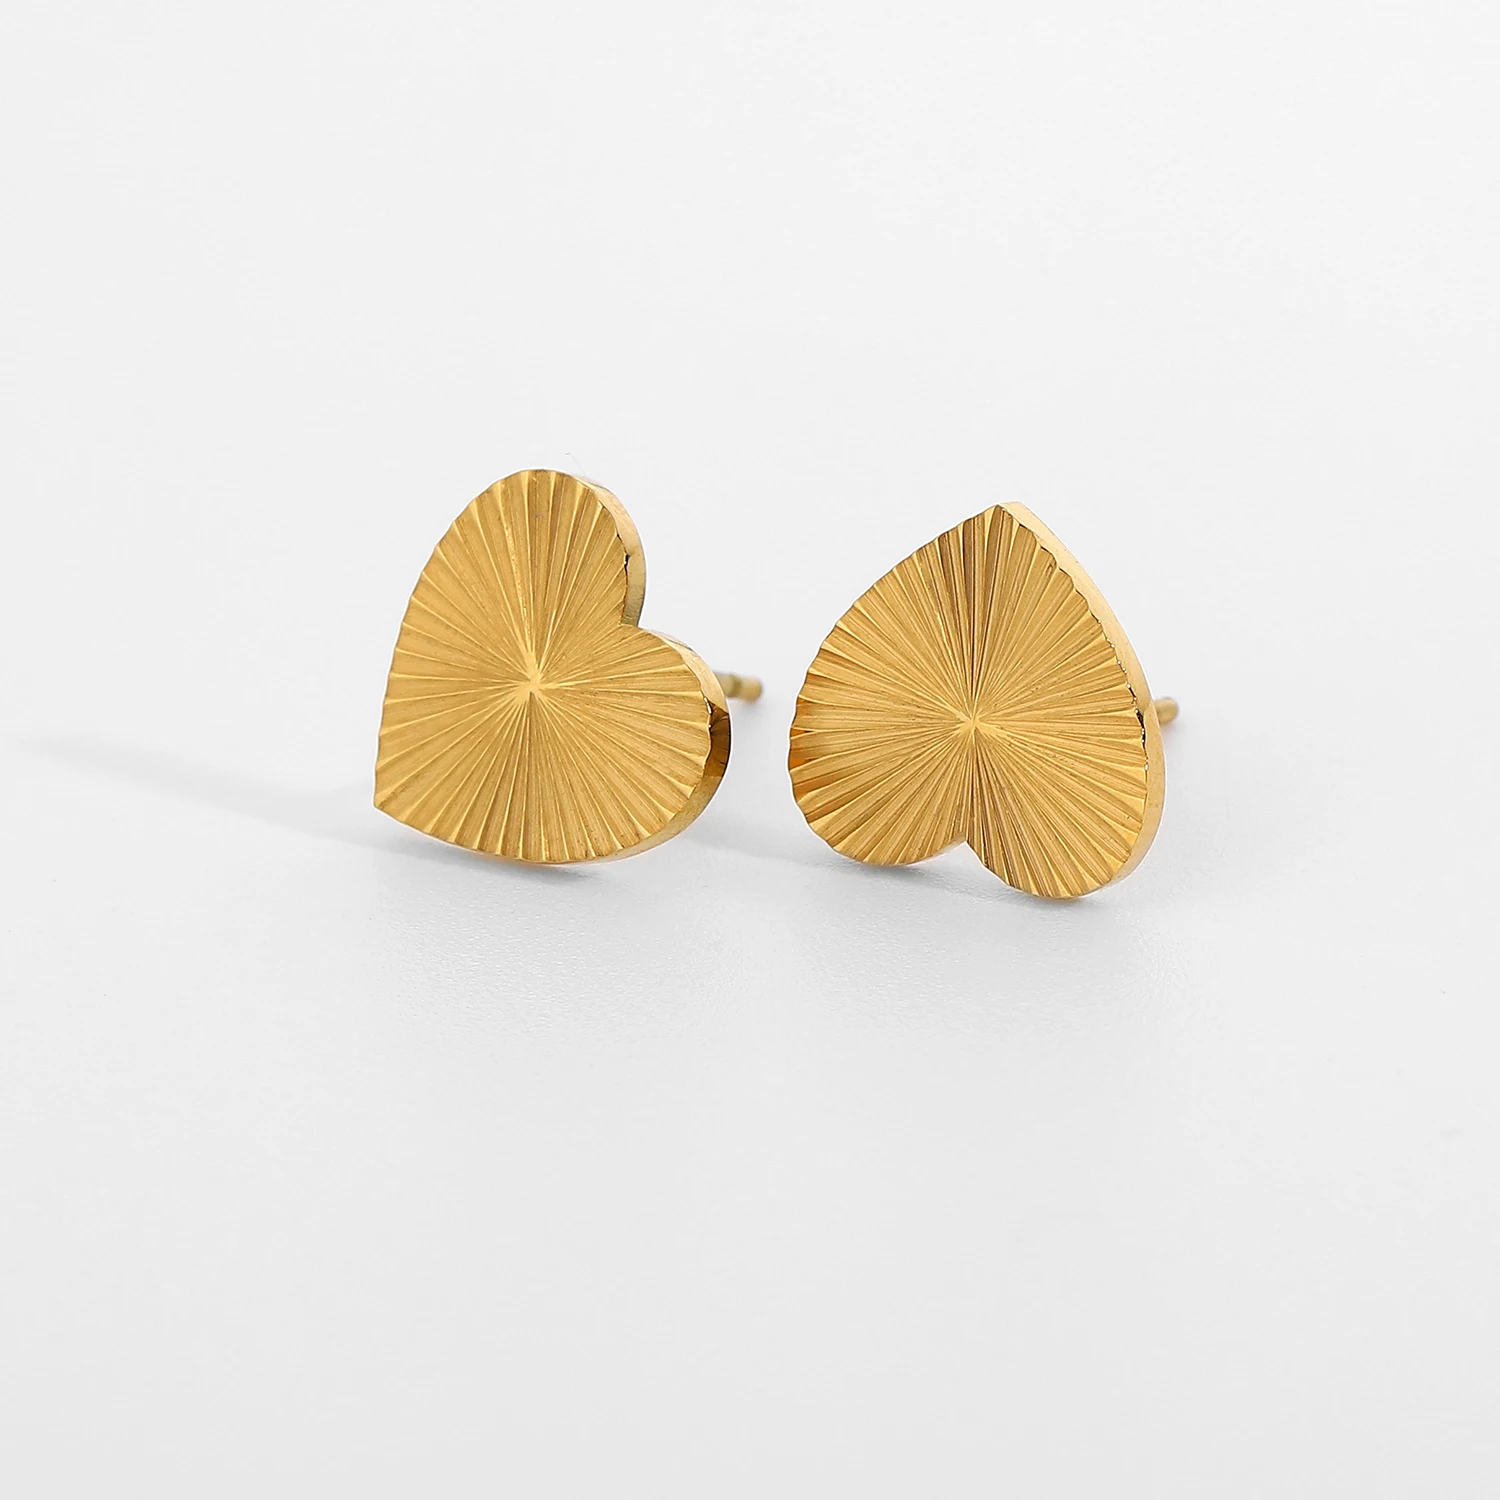 

Simple Retro Inspired Eternal Love Heart Stud Earrings Gold IP Plating Stainless Steel Amore earrings